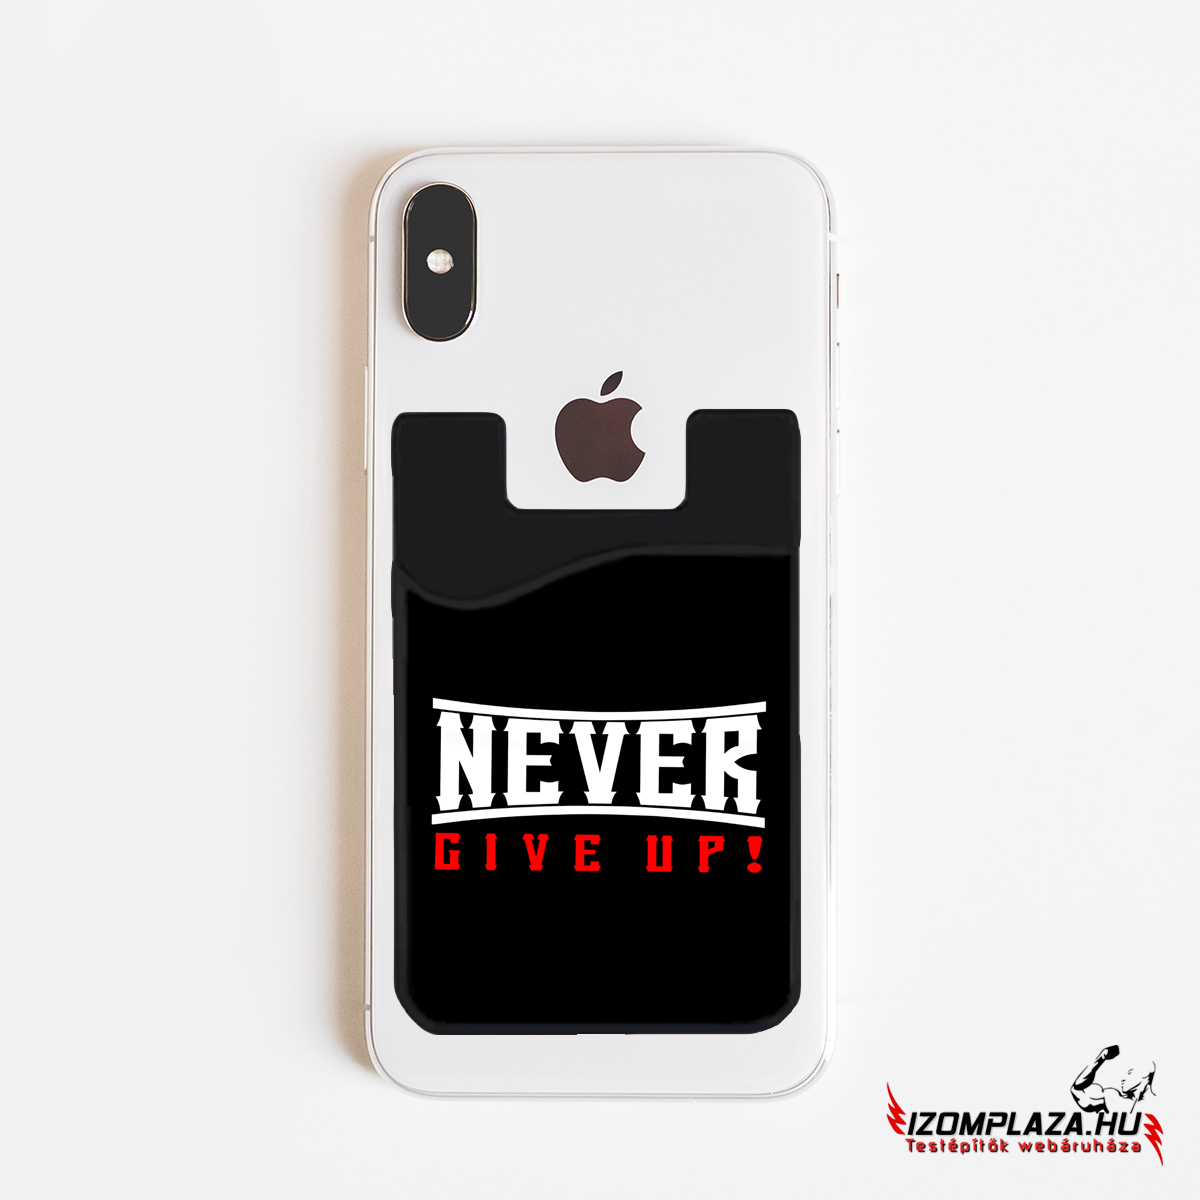 Never give up! - kártyatartó mobiltelefonra